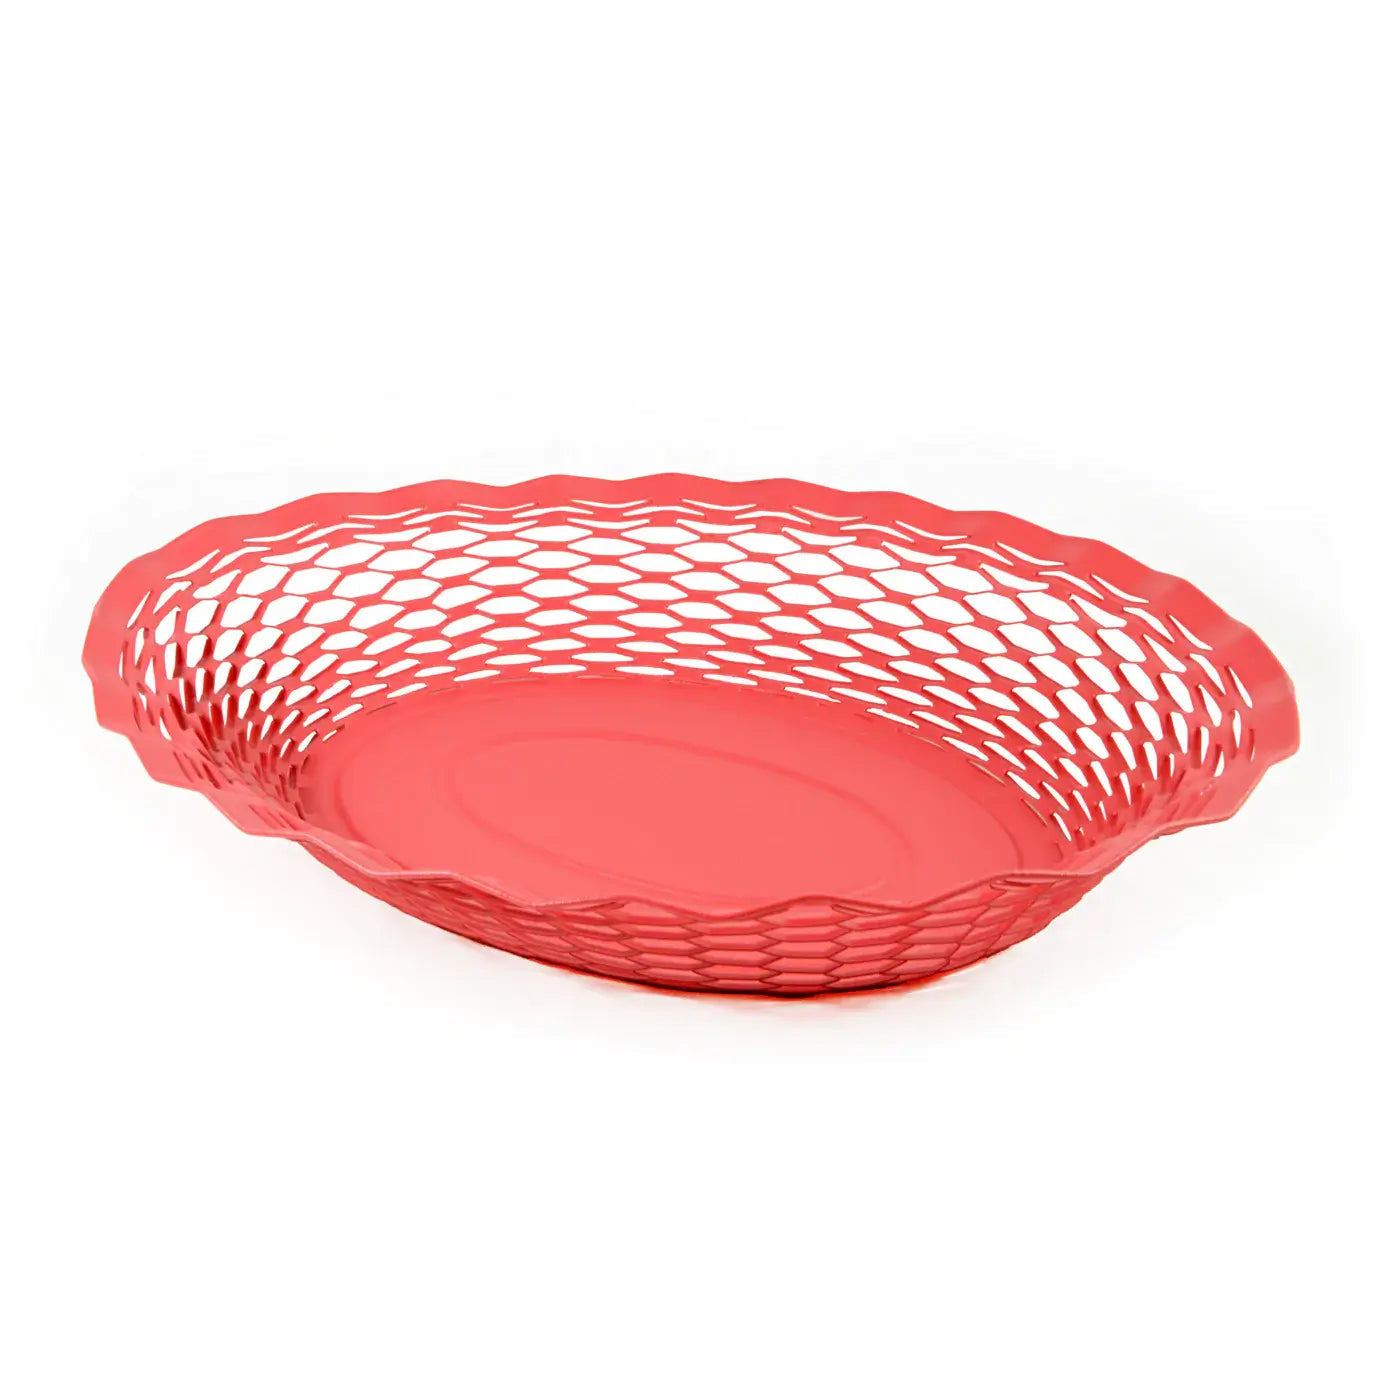 Metal Food Basket Large by Roger Orfèvre Kitchen ROGER ORFÈVRE Coral Pink Matte Prettycleanshop